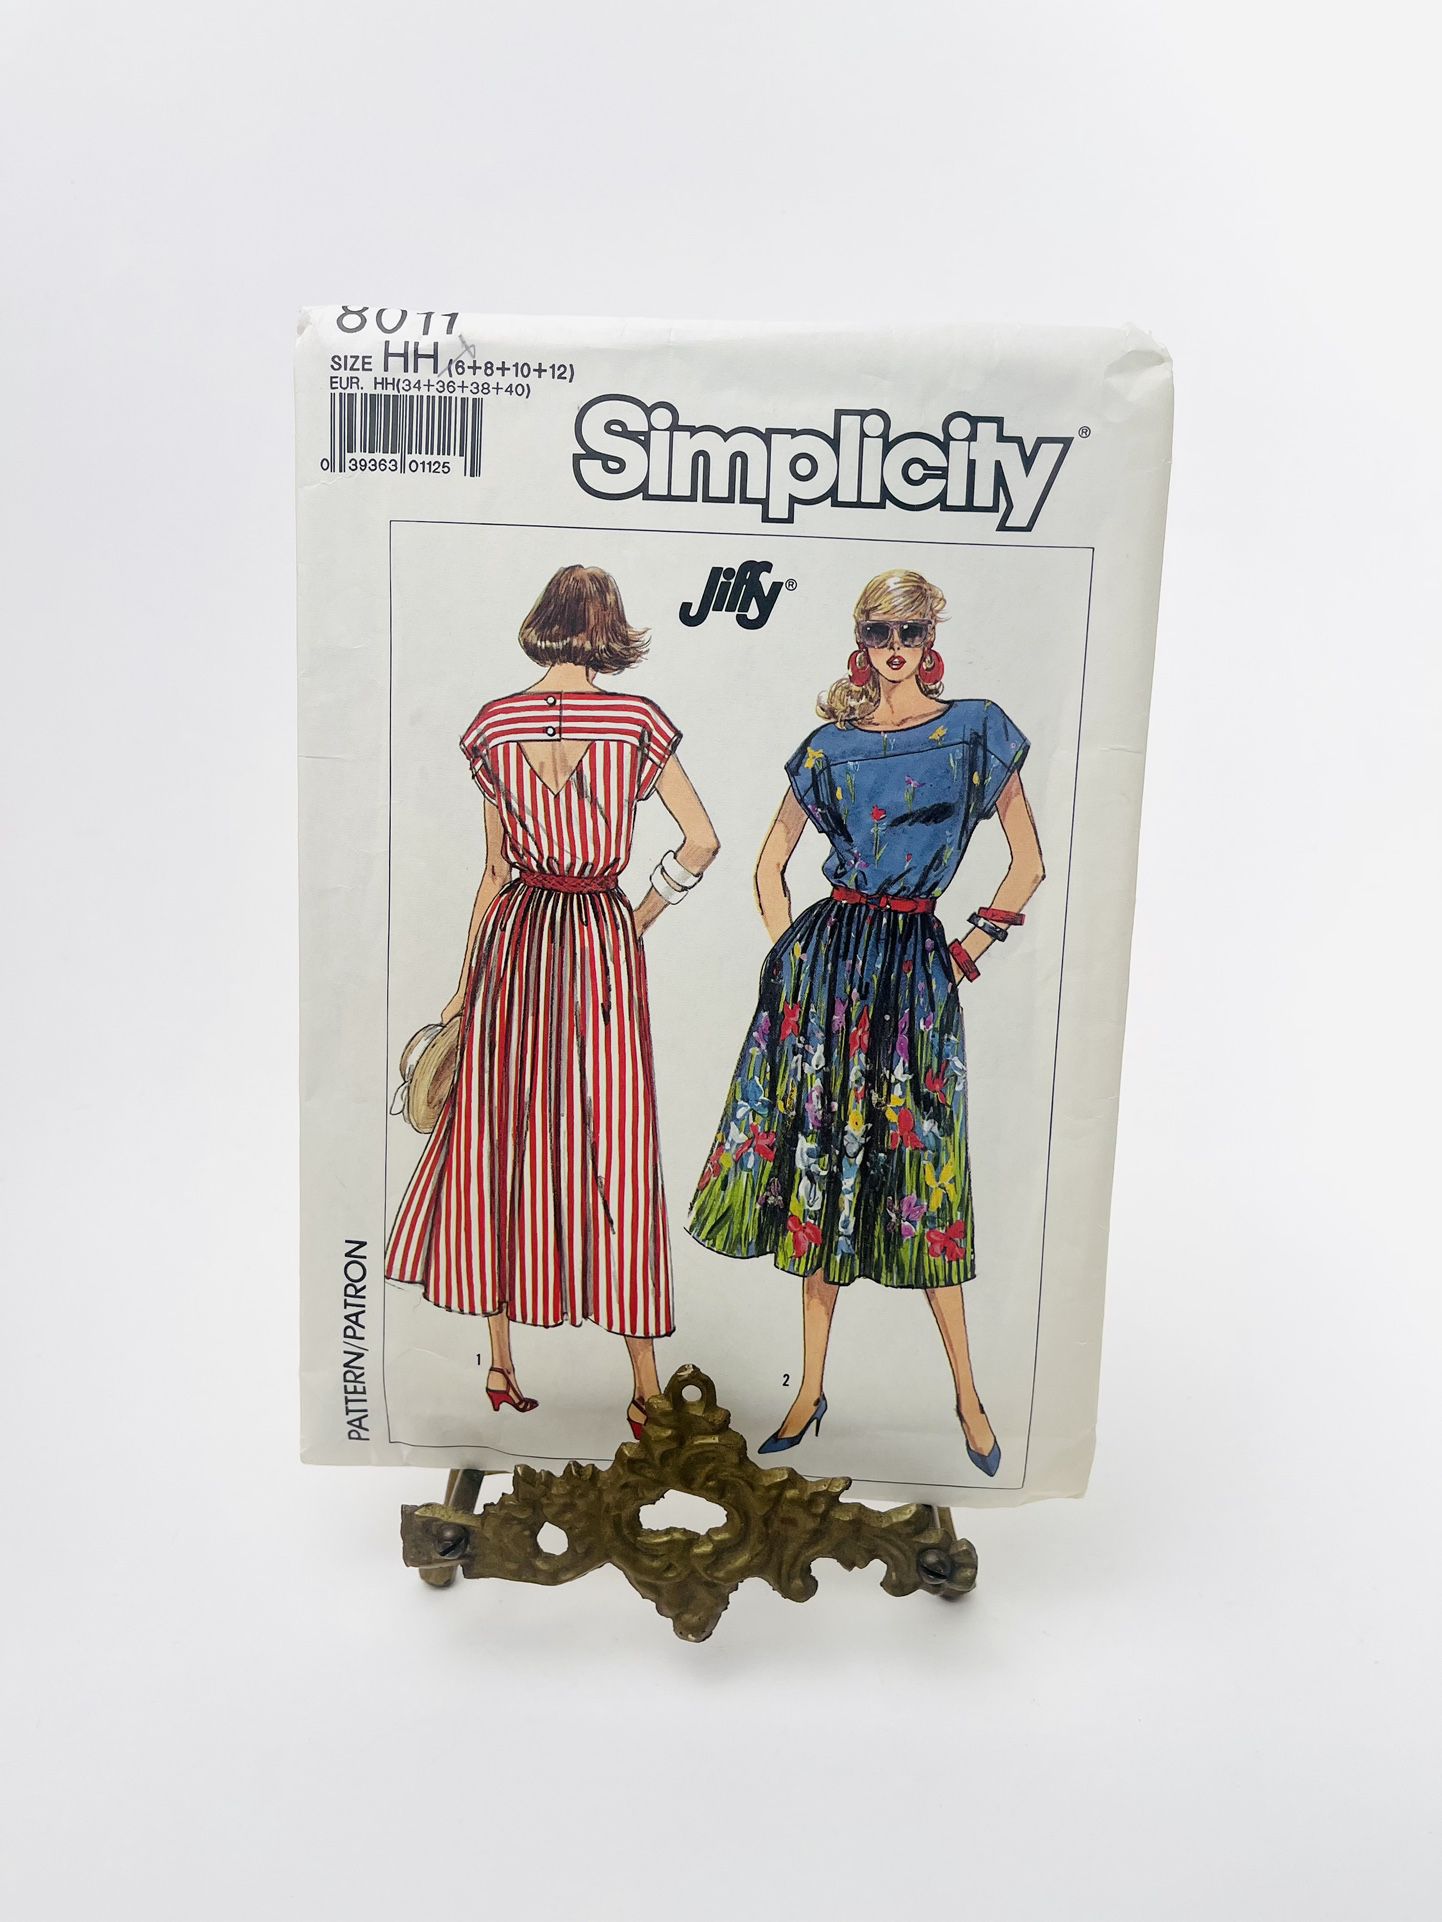 Vintage Simplicity 8011 Sewing Pattern Misses Dress Size 6 8 10 12 Uncut 1987